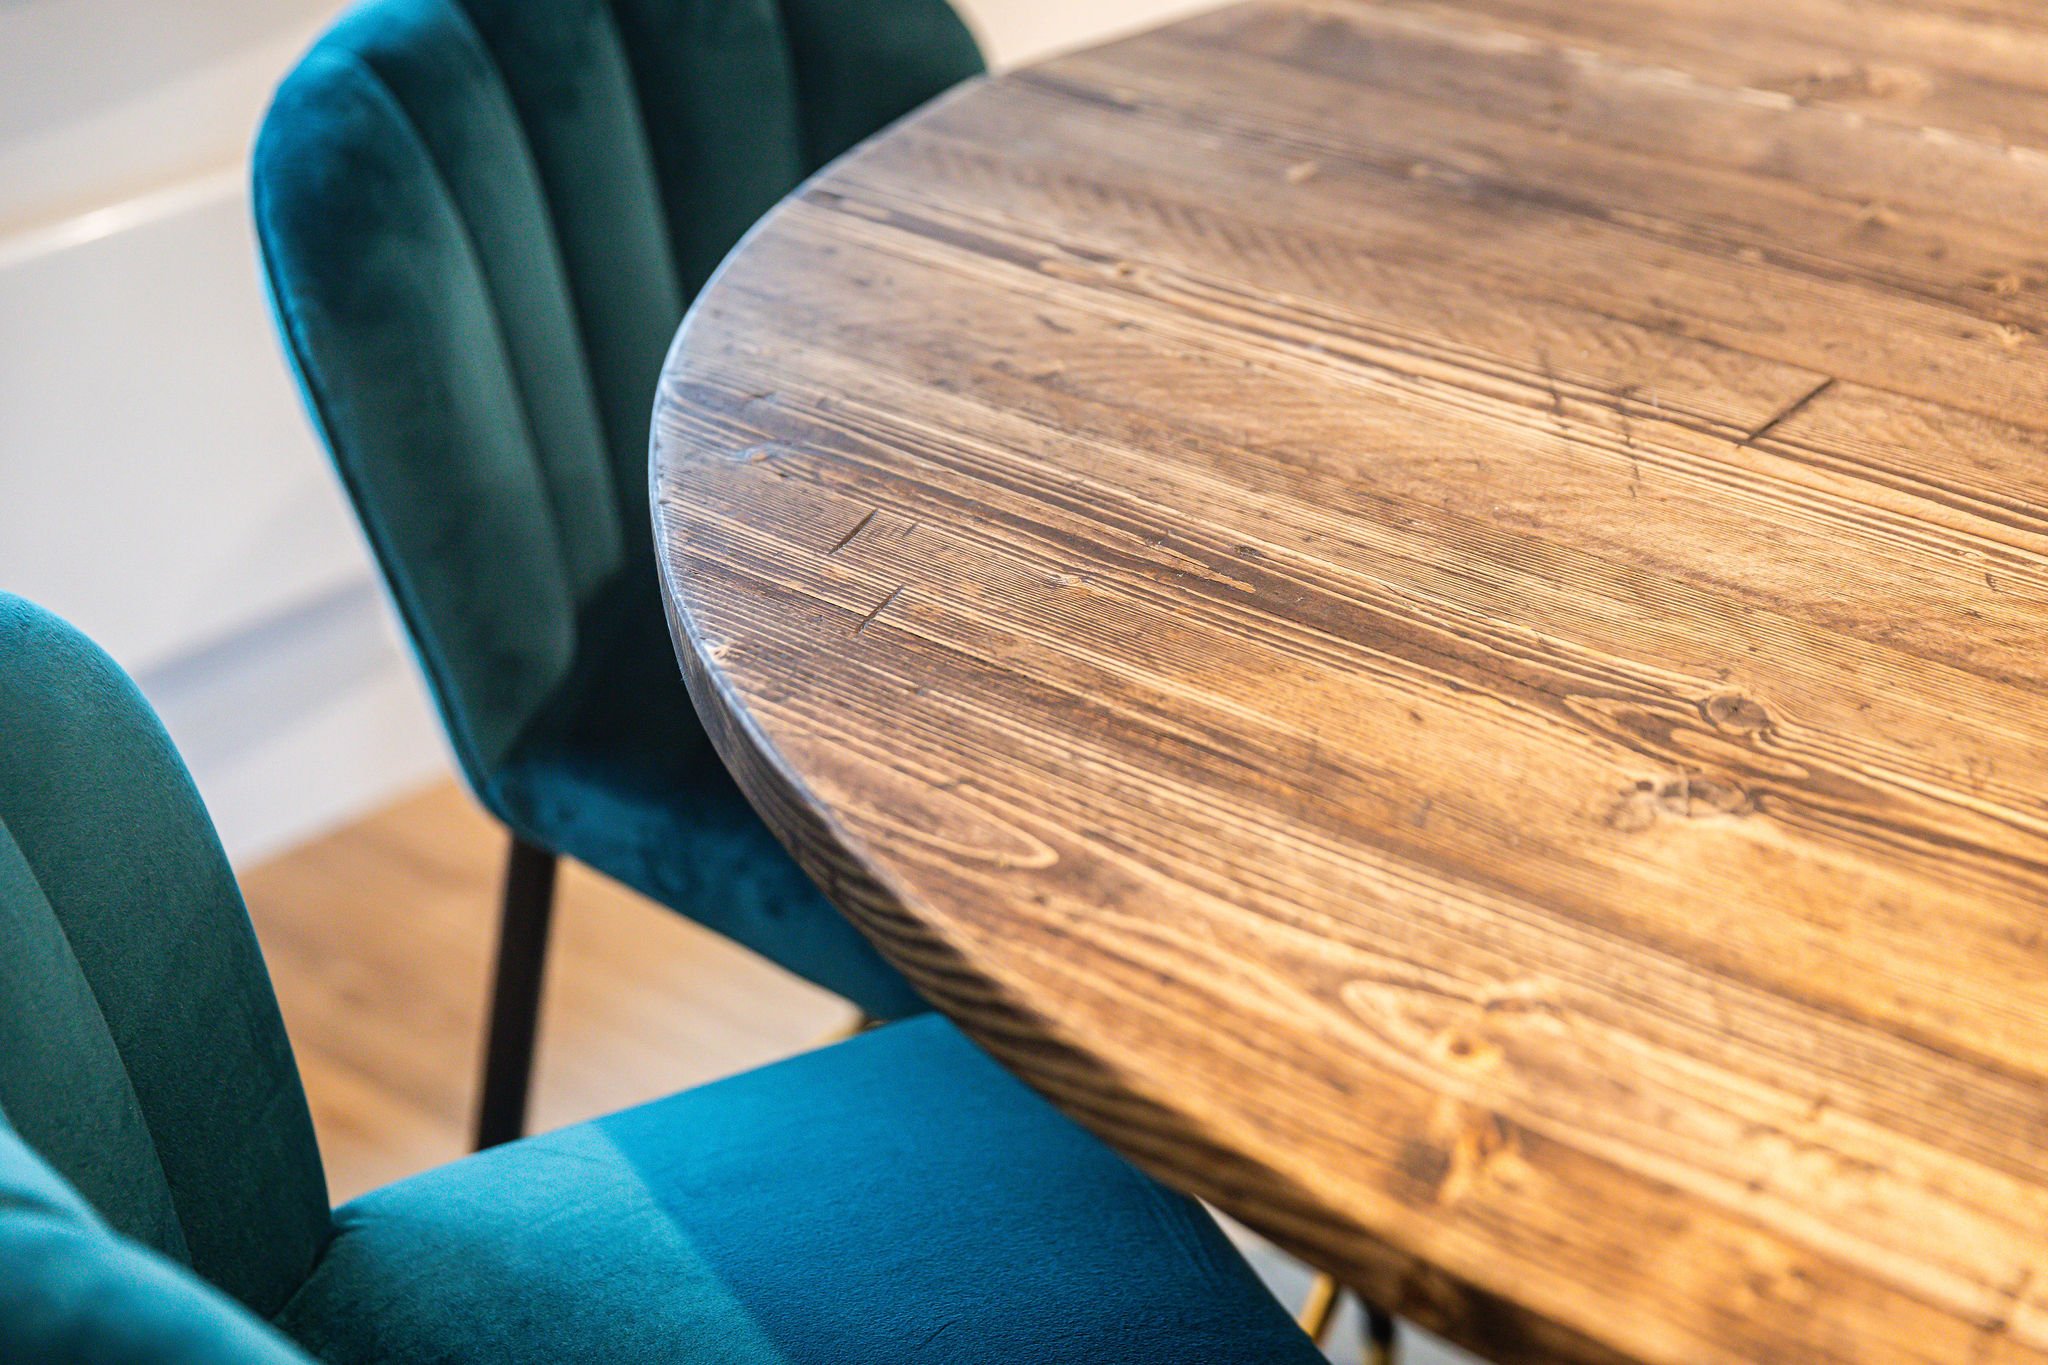 Putney project teal breakfast velvet chair bar Orsetto Interiors.jpg